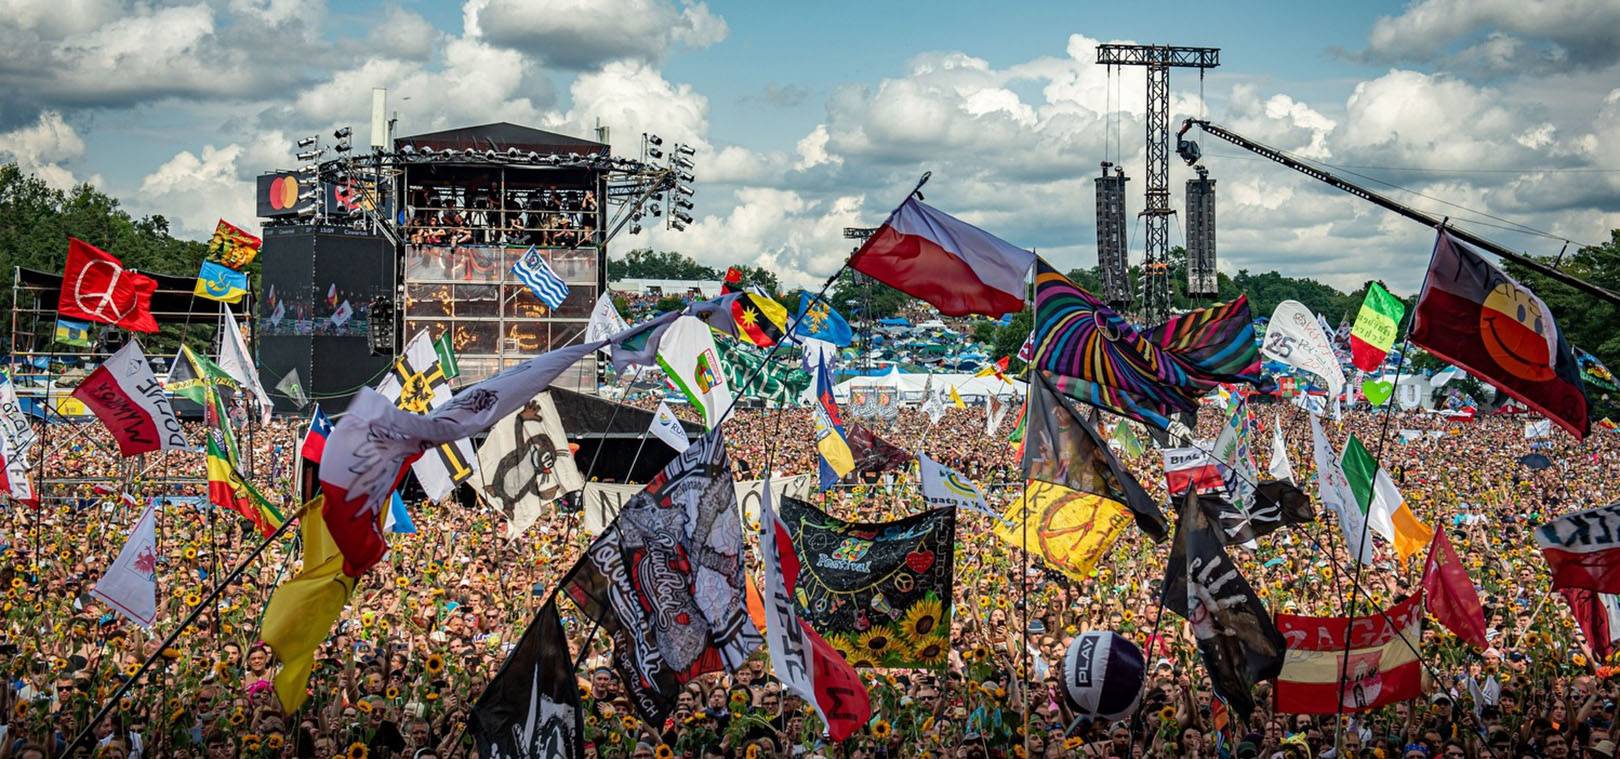 Kiedyś Woodstock Teraz Pol’and’Rock Festival, trawka24